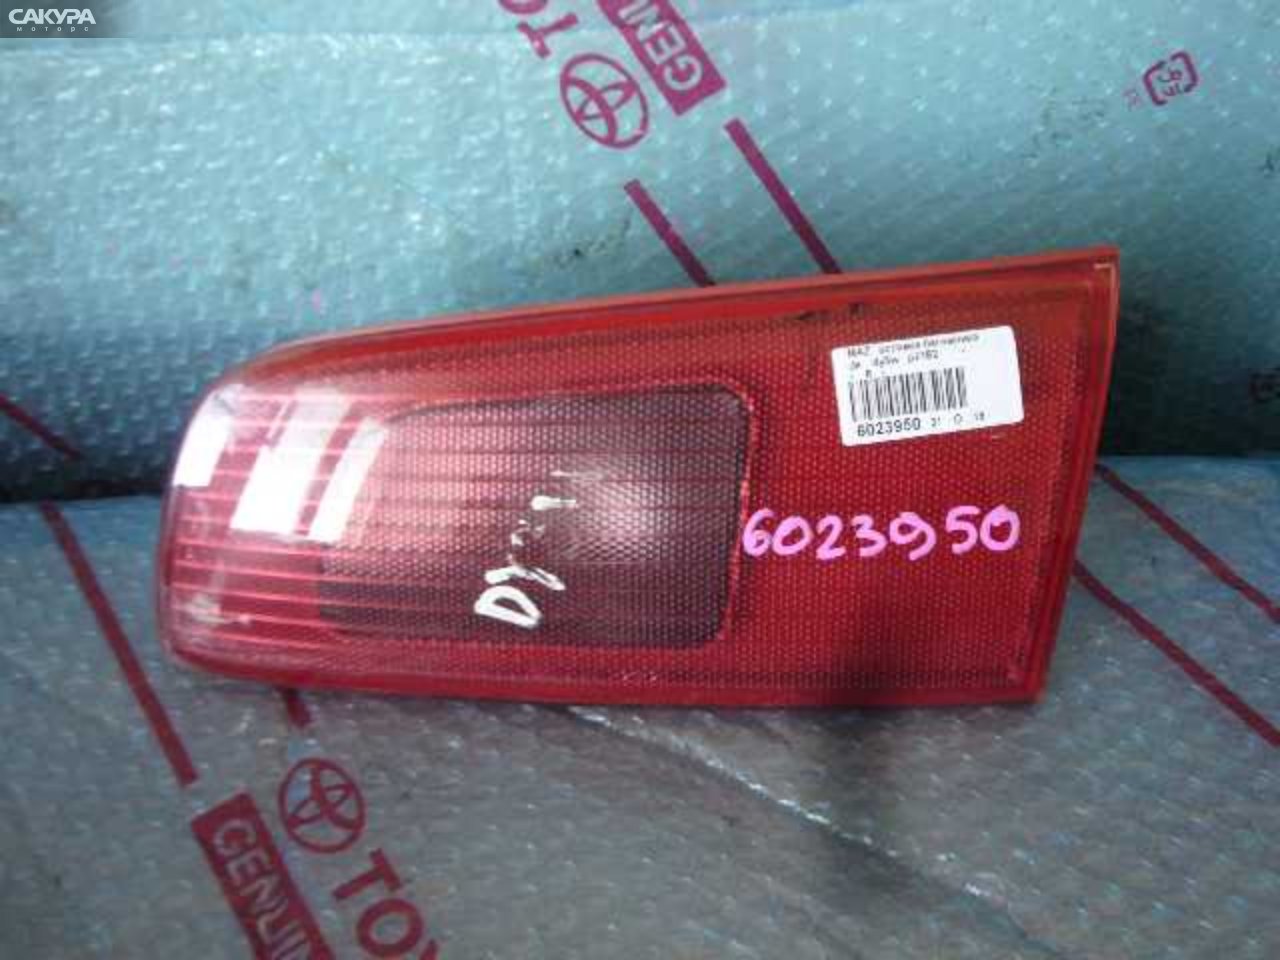 Фонарь вставка багажника правый Mazda Demio DY3W P2182: купить в Сакура Кемерово.